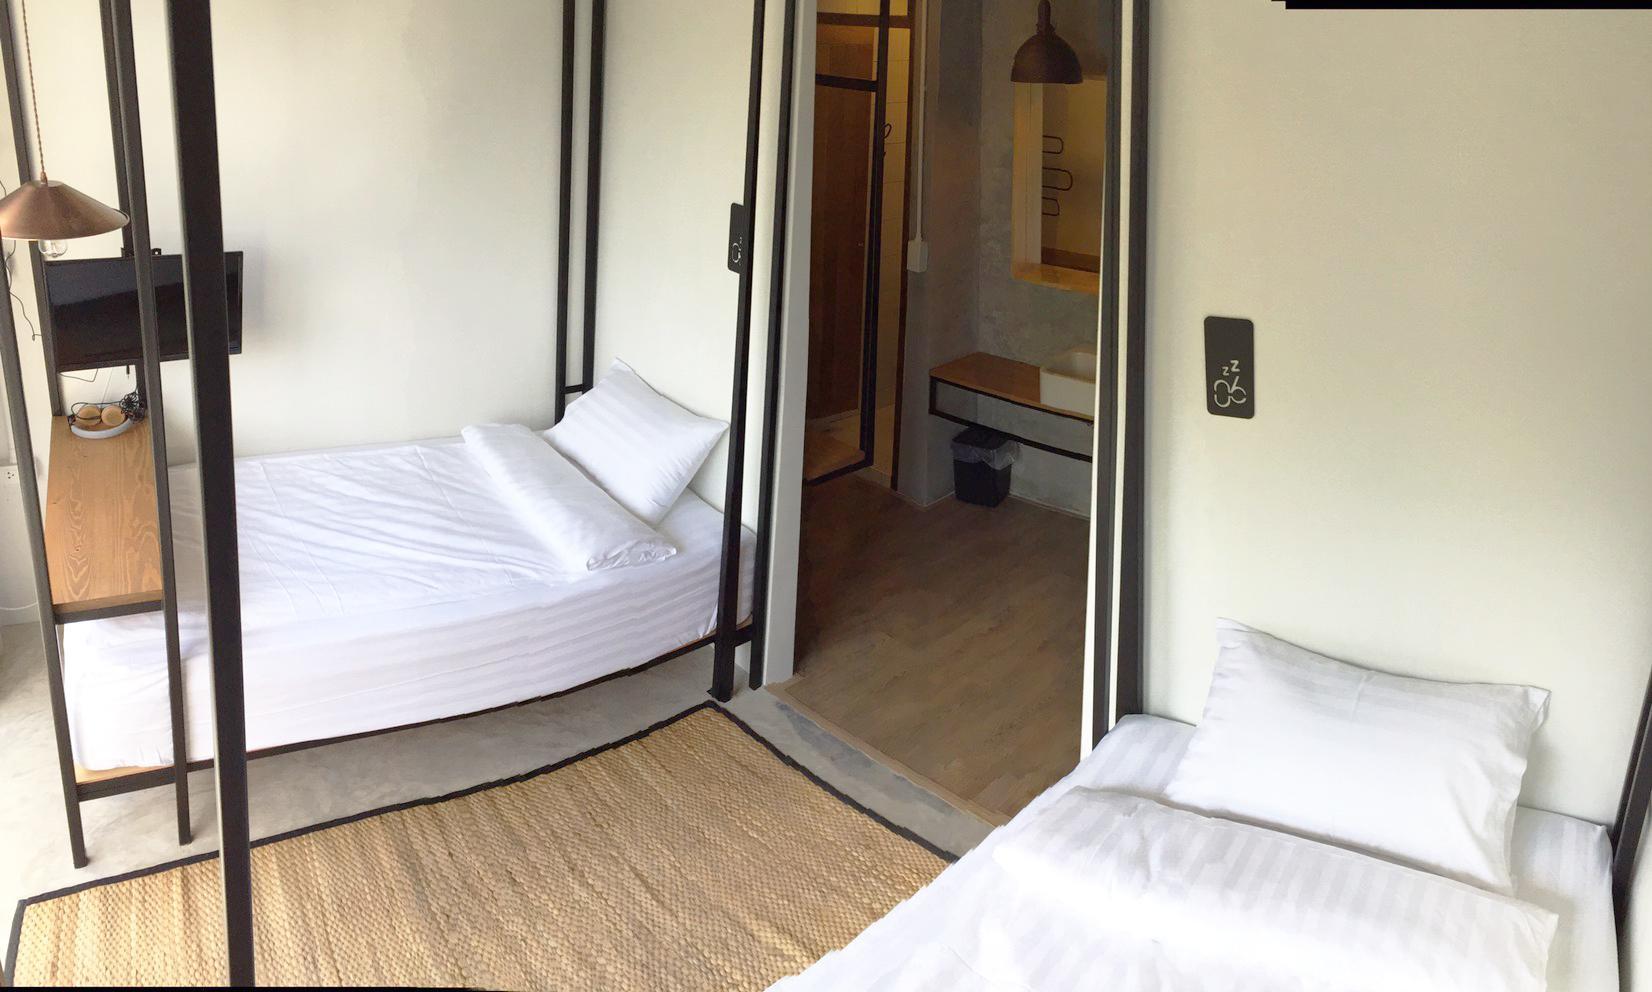 รีวิวเบดกัสซั่ม โฮสเทล จันทบุรี - โปรโมชั่นโรงแรม 3 ดาวในตำบล จันทนิมิต |  Trip.com